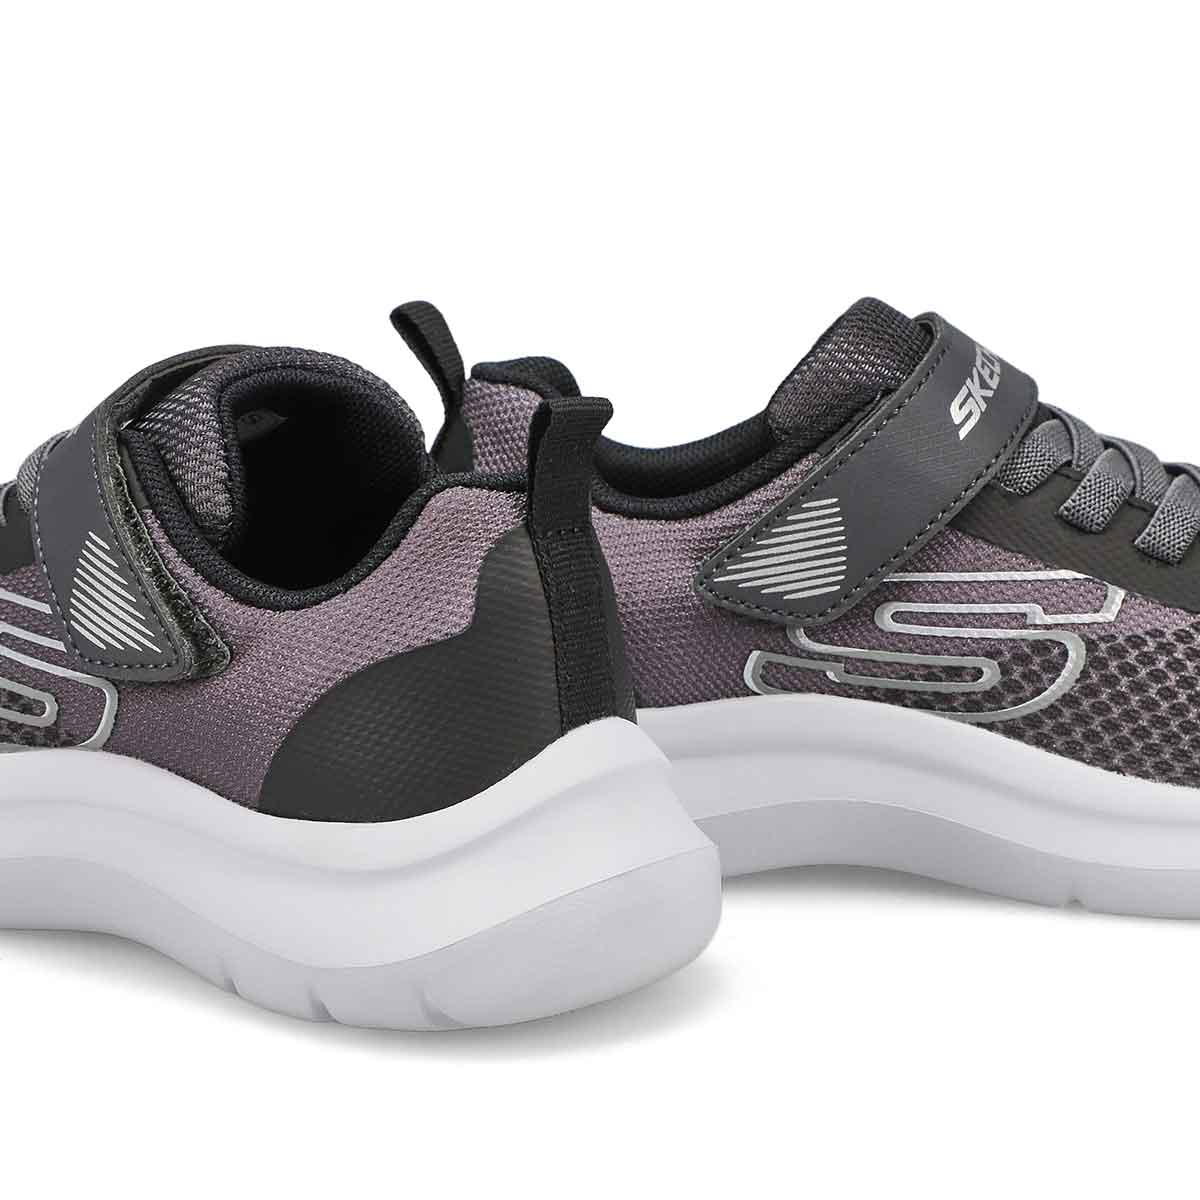 Boys' Skech Fast Sneaker- Charcoal/ Black